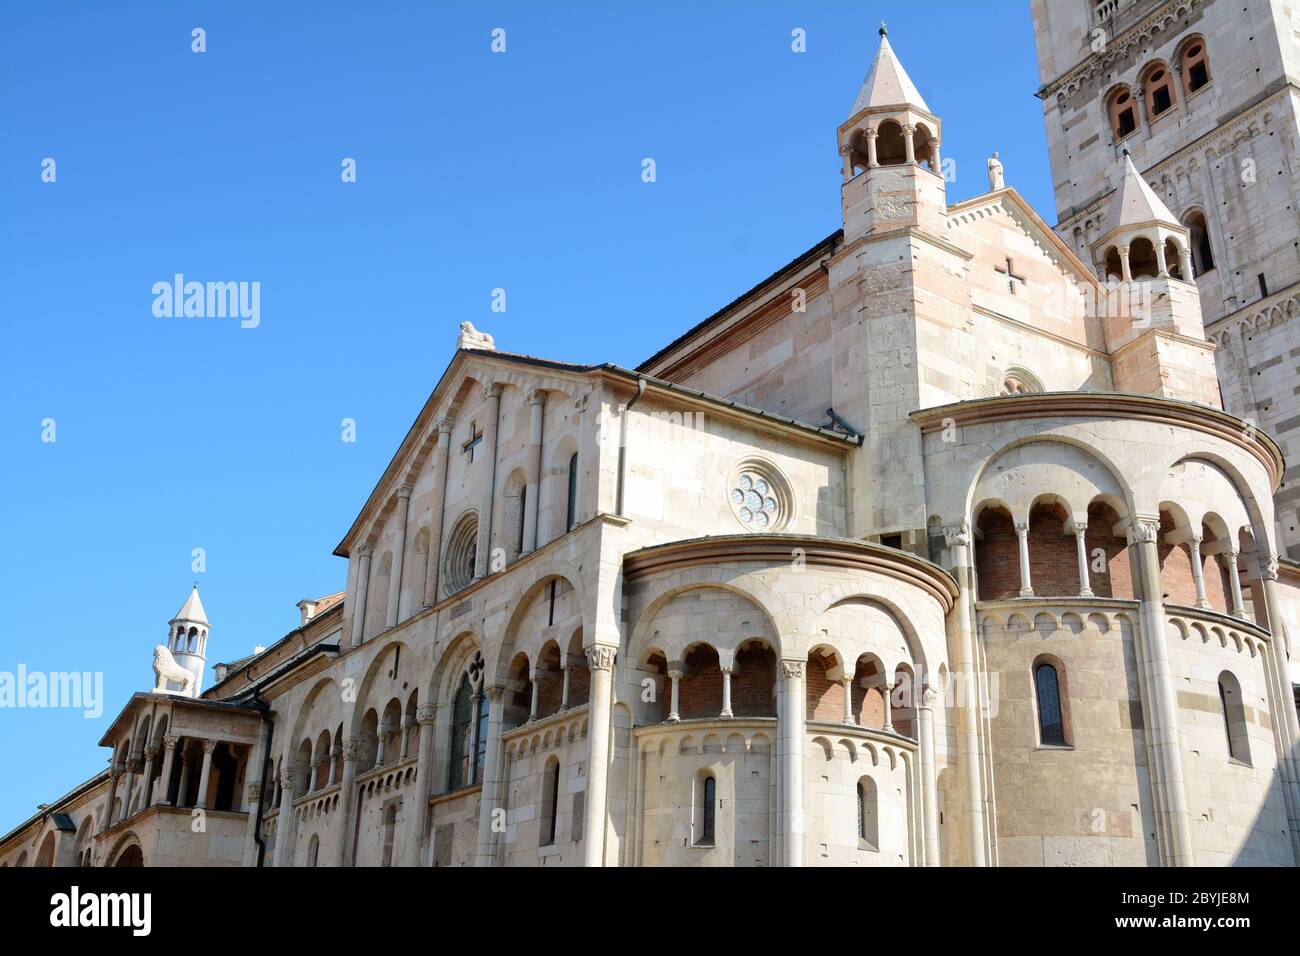 Italien/Modena – 23. Juni 2019: Die Kathedrale von Modena ist ein Meisterwerk des romanischen Stils. Es wurde im Jahr 1099 vom Architekten Lanfranco gebaut Stockfoto